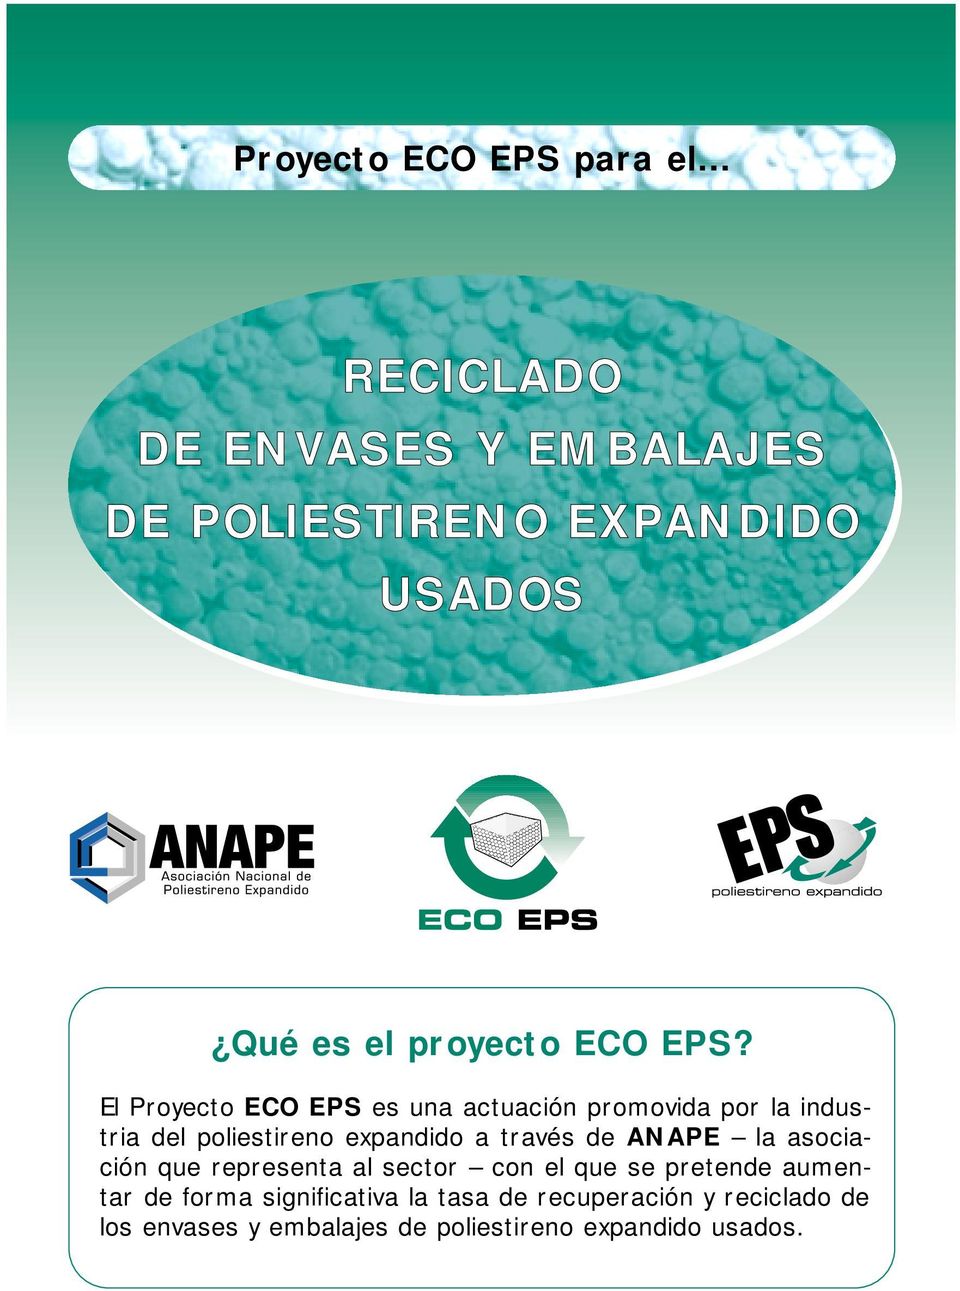 El Proyecto ECO EPS es una actuación promovida por la industria del poliestireno expandido a través de